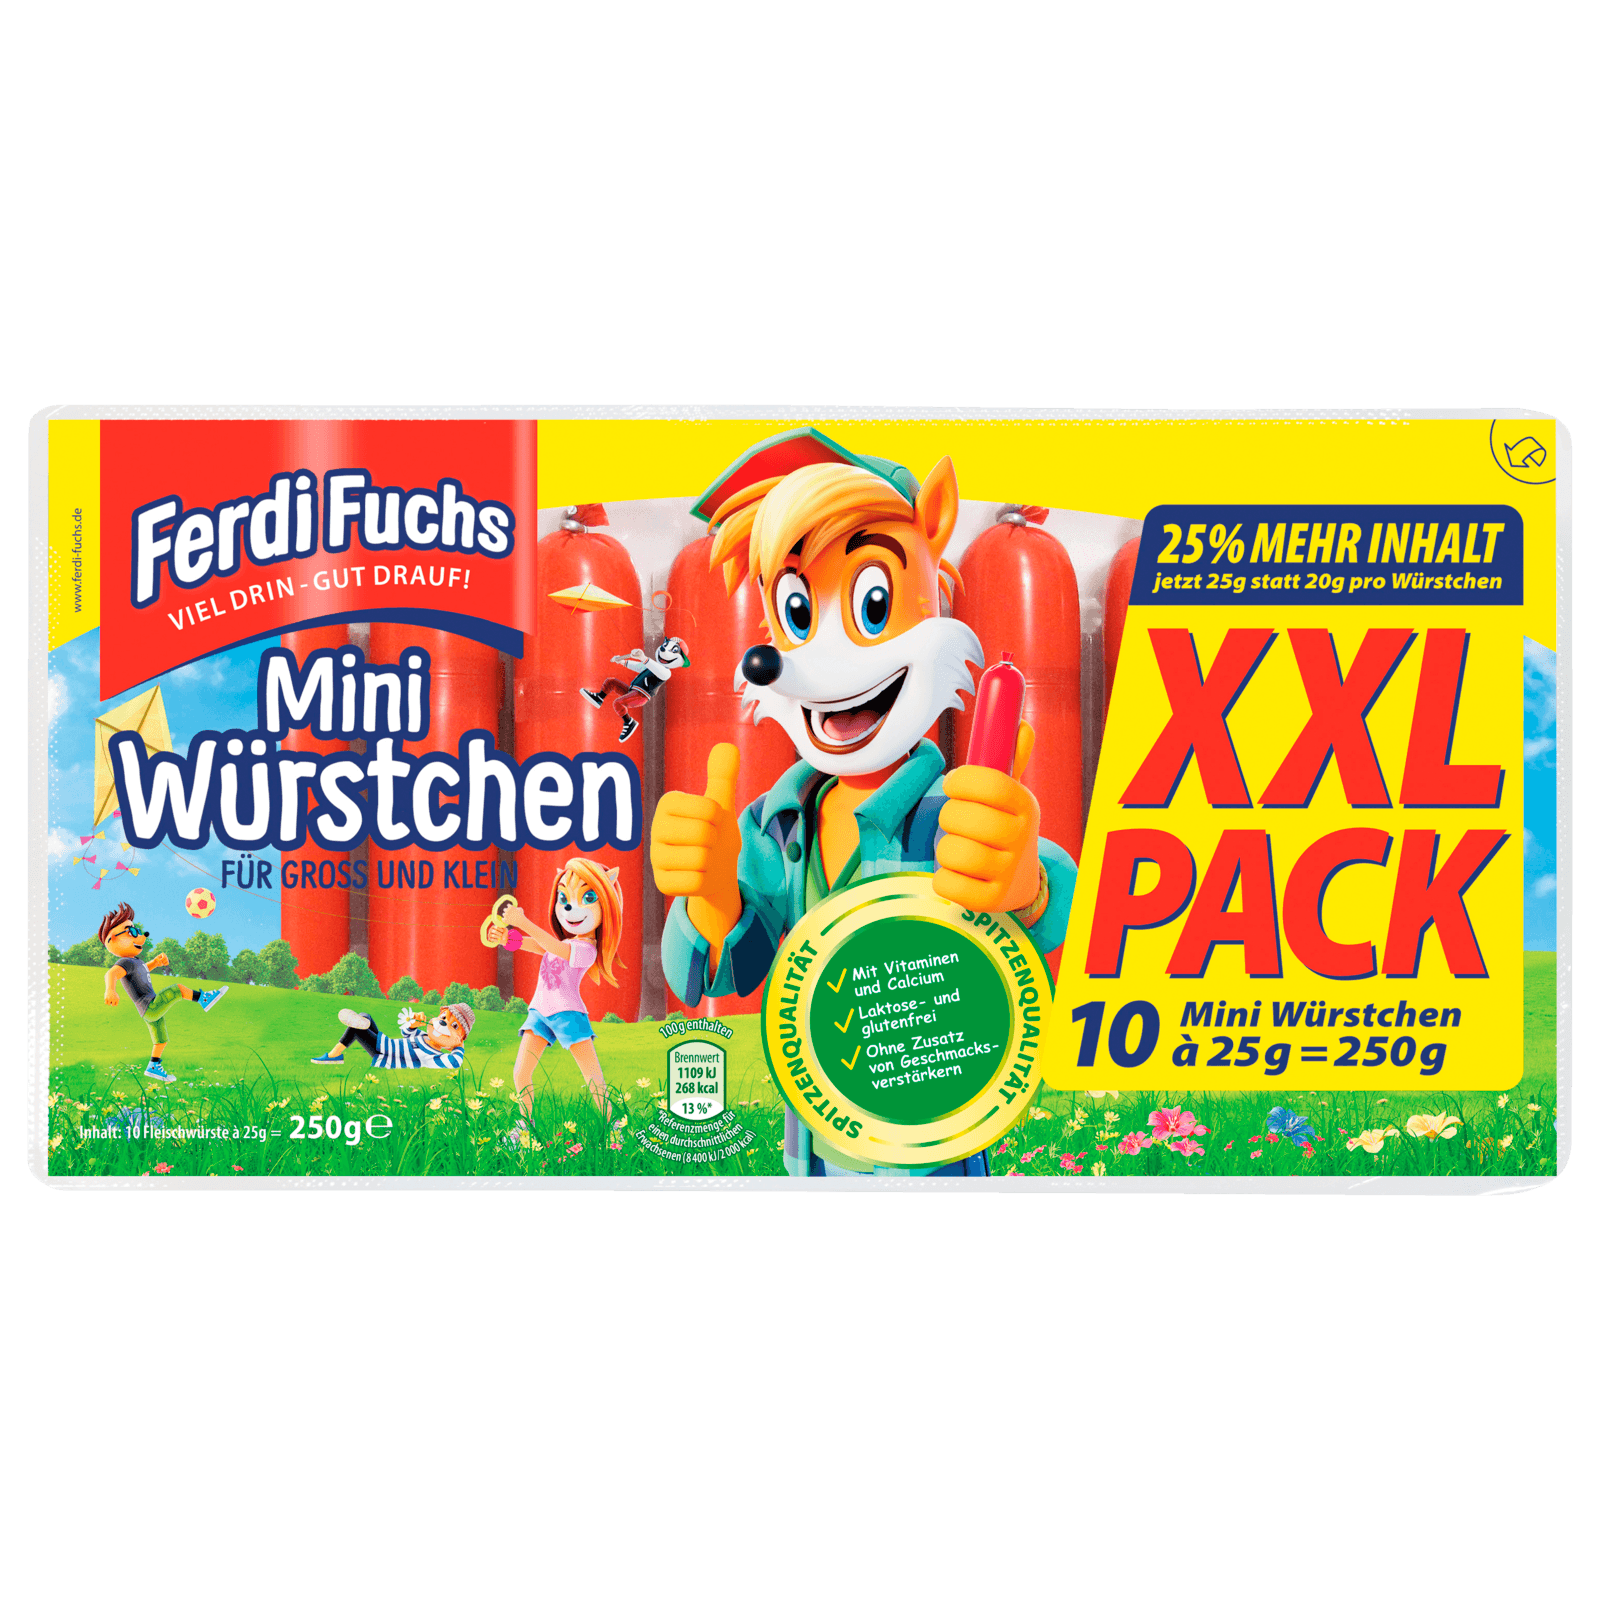 Mini-Würstchen Fuchs Ferdi bei REWE XXL-Pack 10x25g bestellen! online